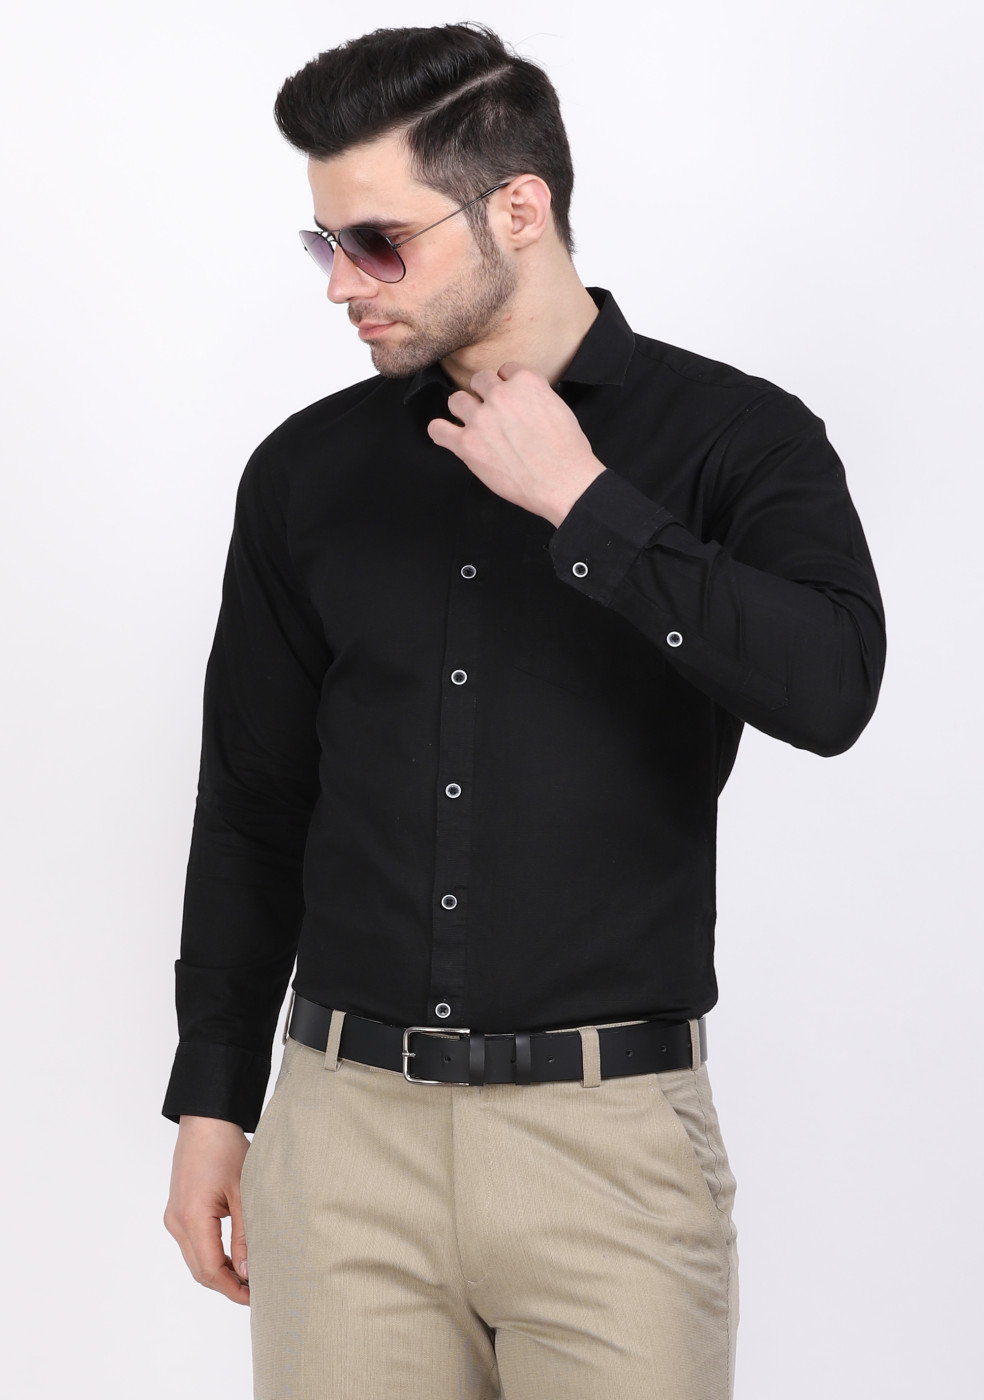 ASHTOM Black Color Plain Shirt For Men